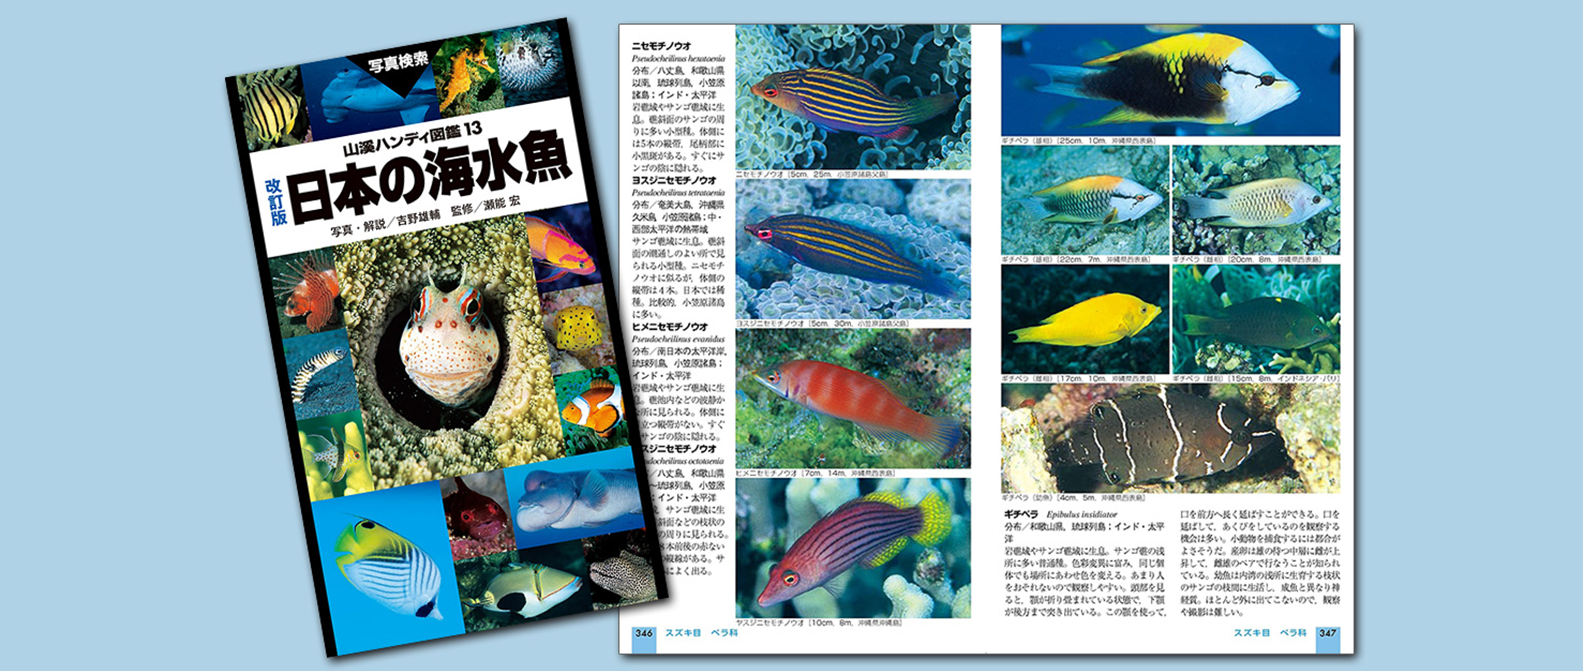 人気の海水魚図鑑「山溪ハンディ図鑑 日本の海水魚」改訂版が発売 